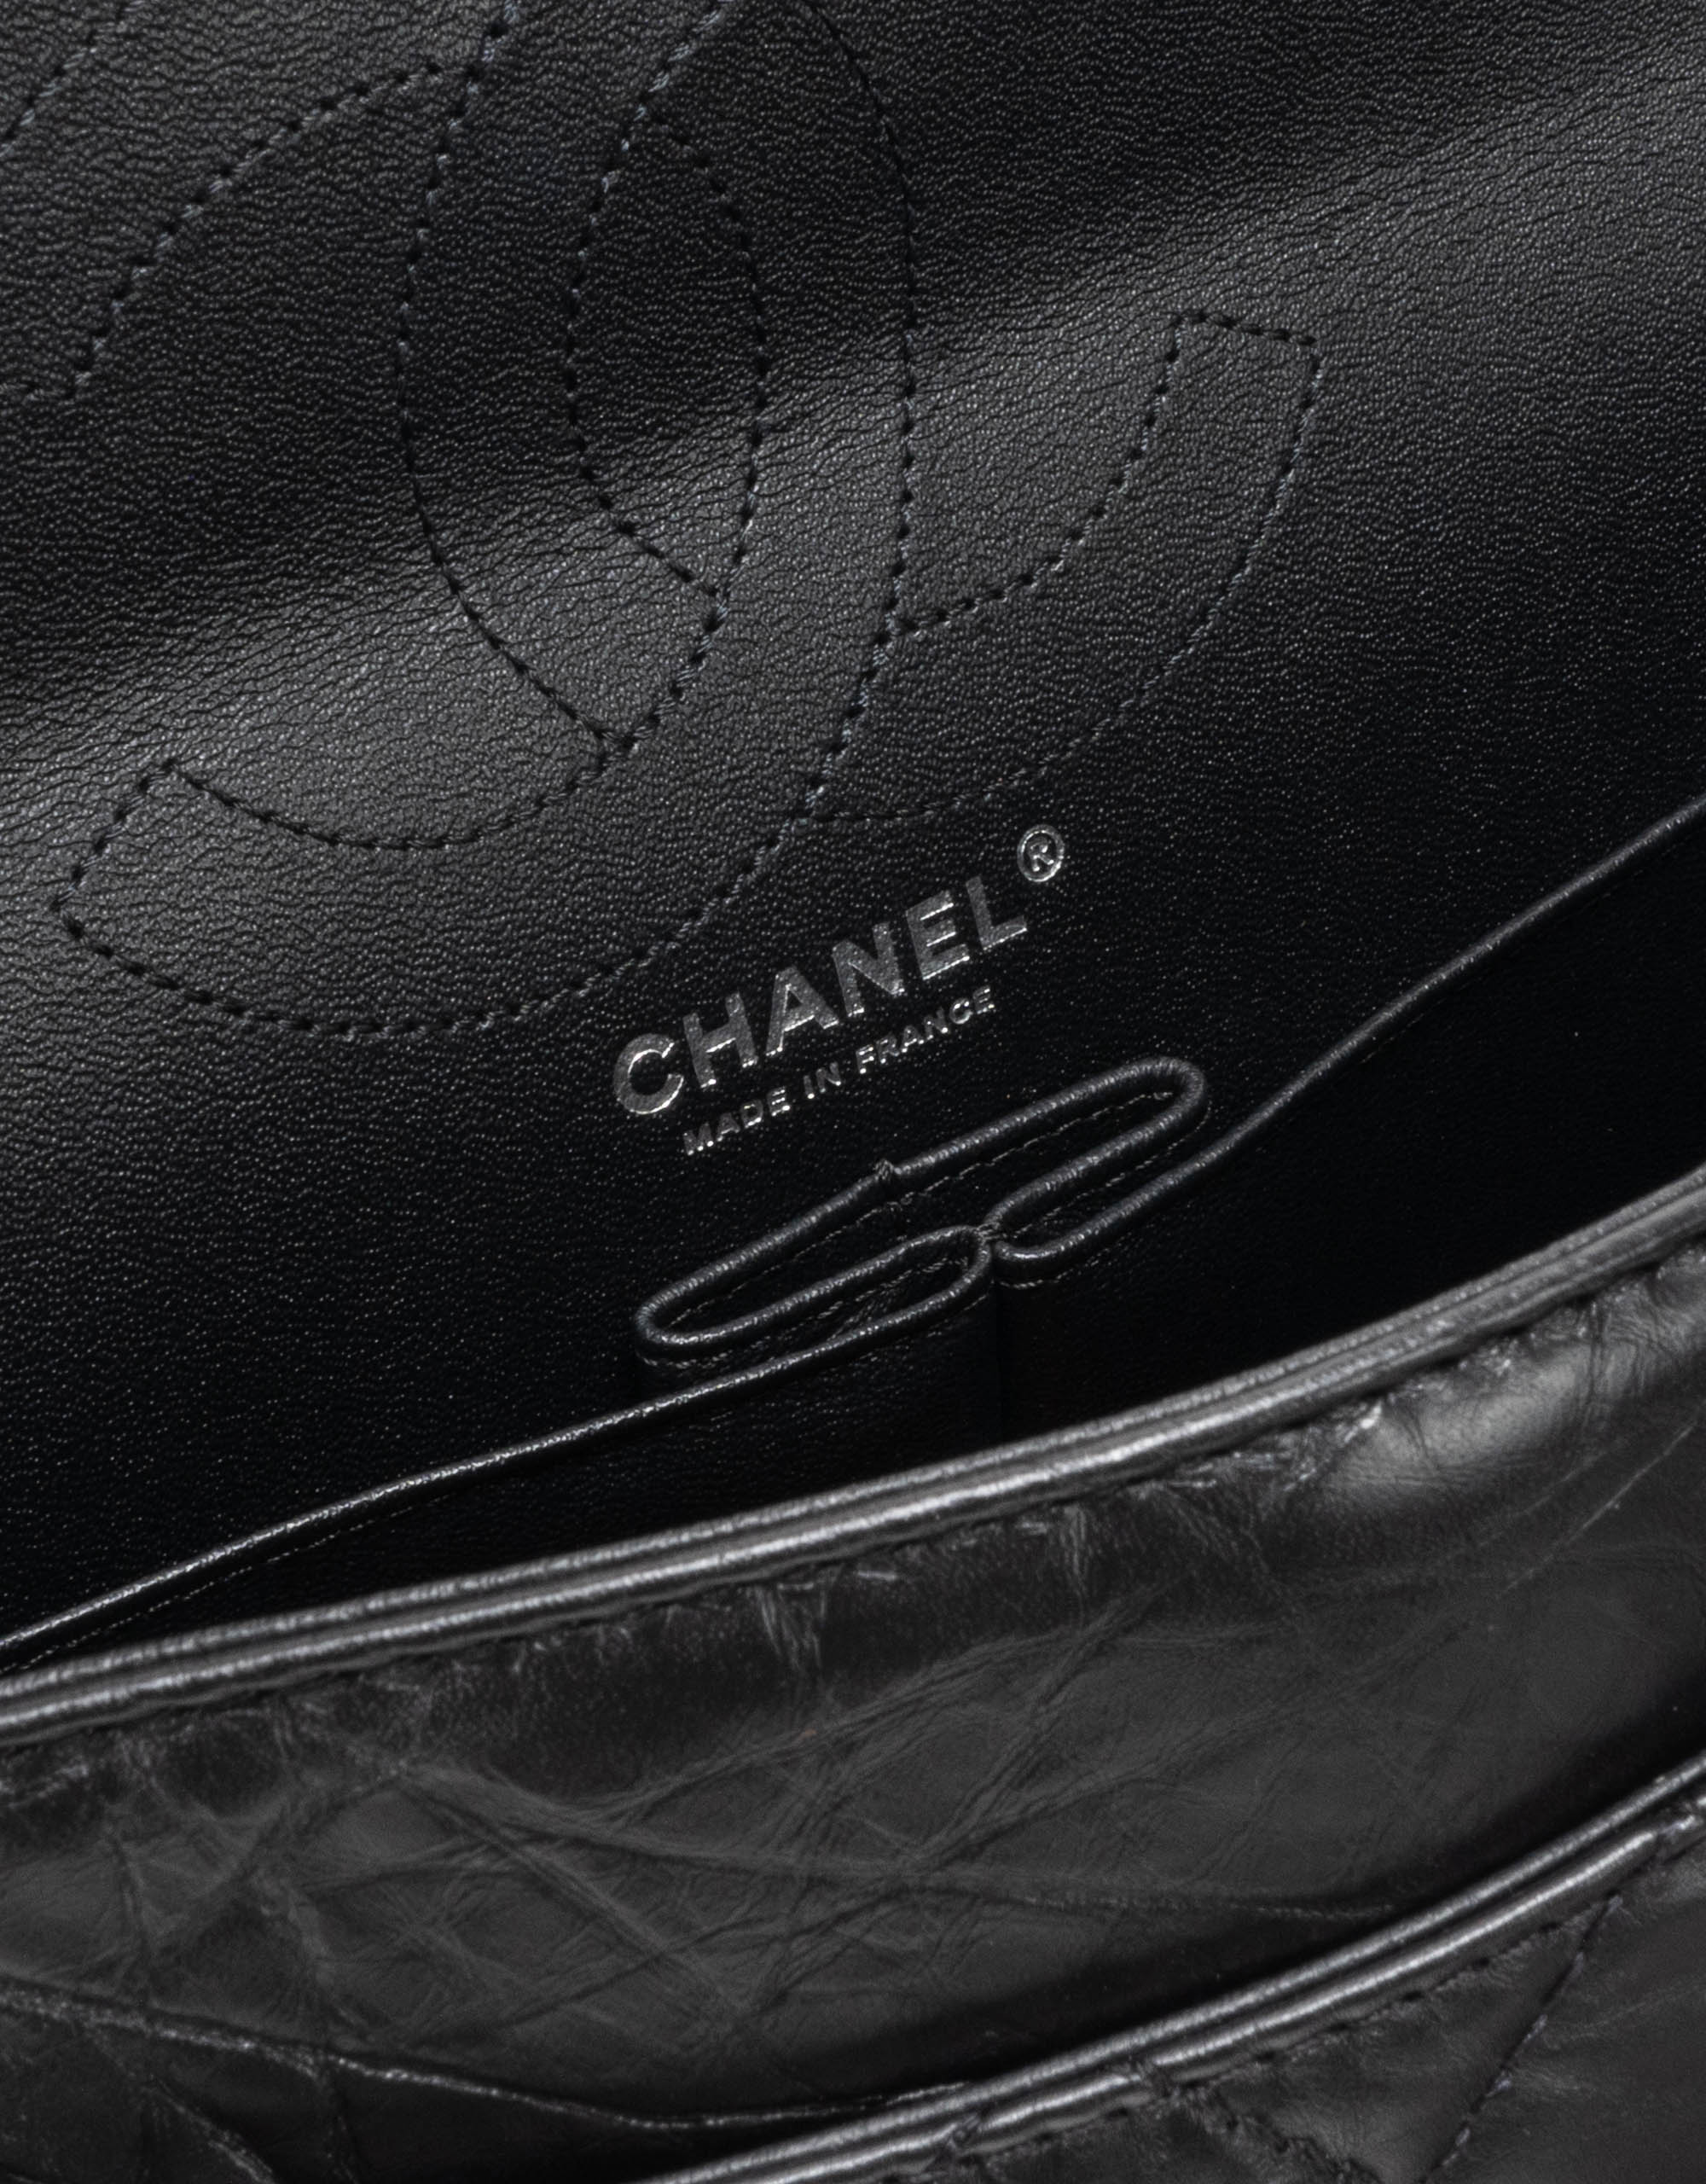 Chanel 2.55 226 So Black Aged Calfskin Logo inside